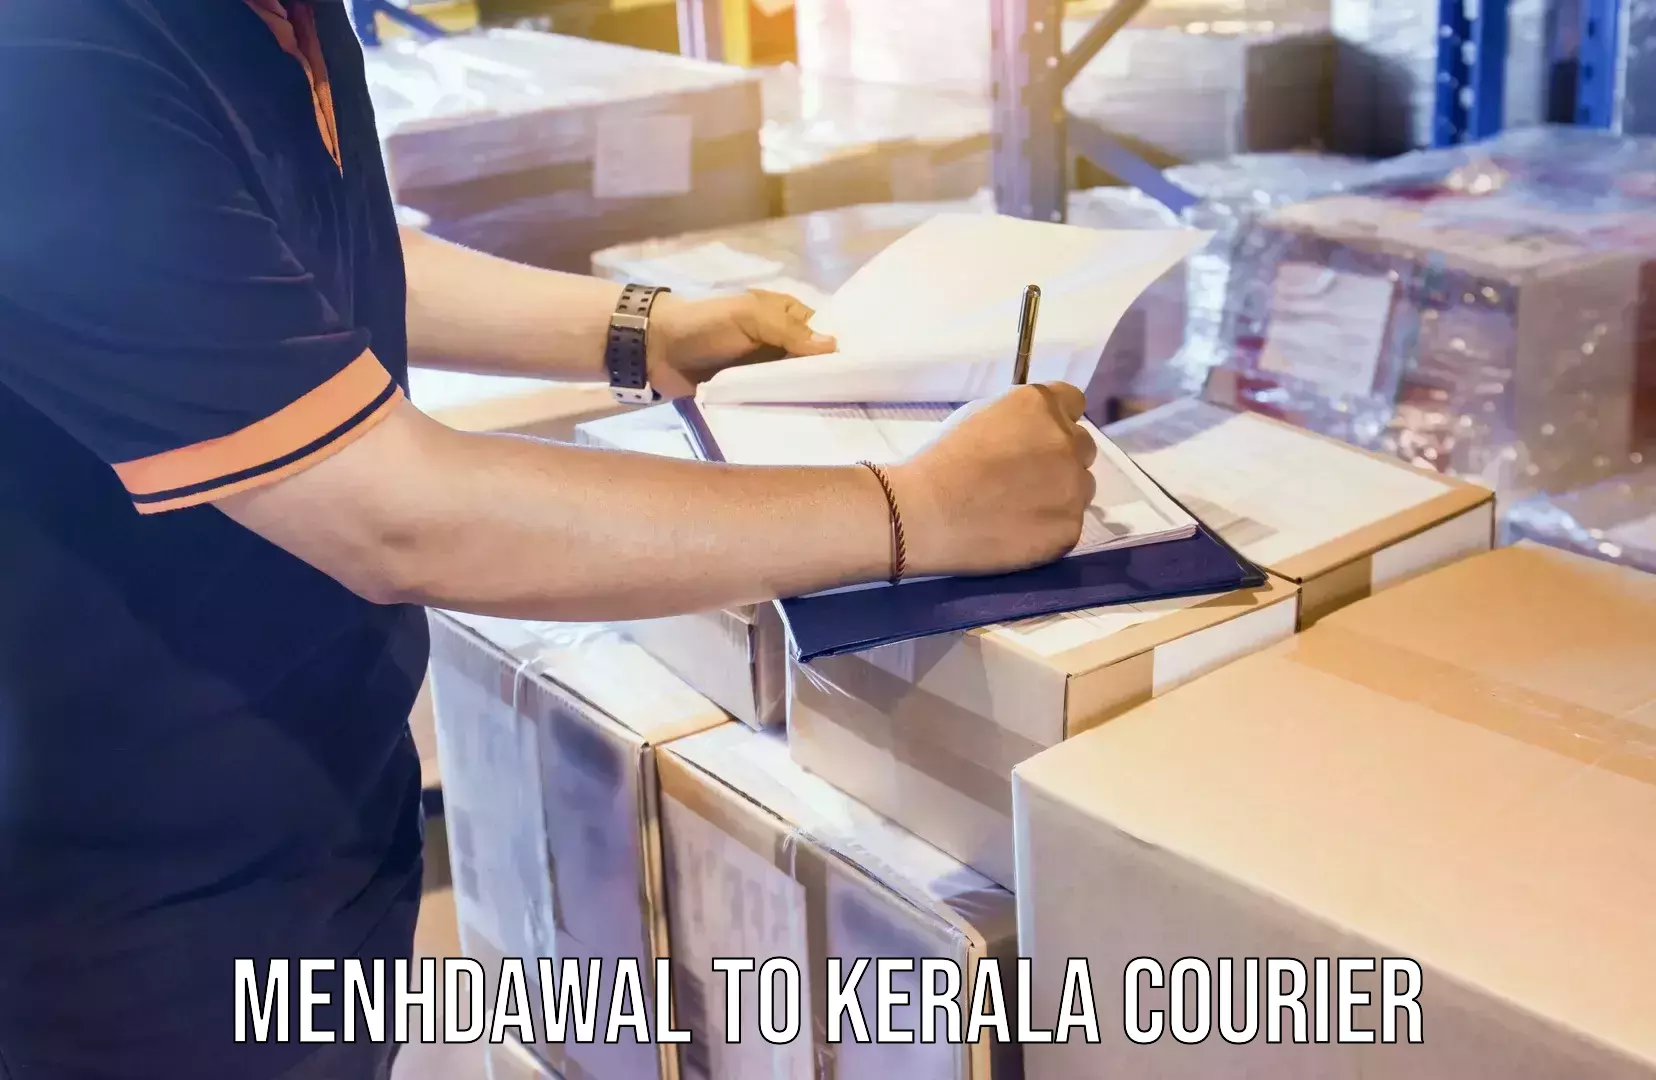 Home goods shifting Menhdawal to Kerala